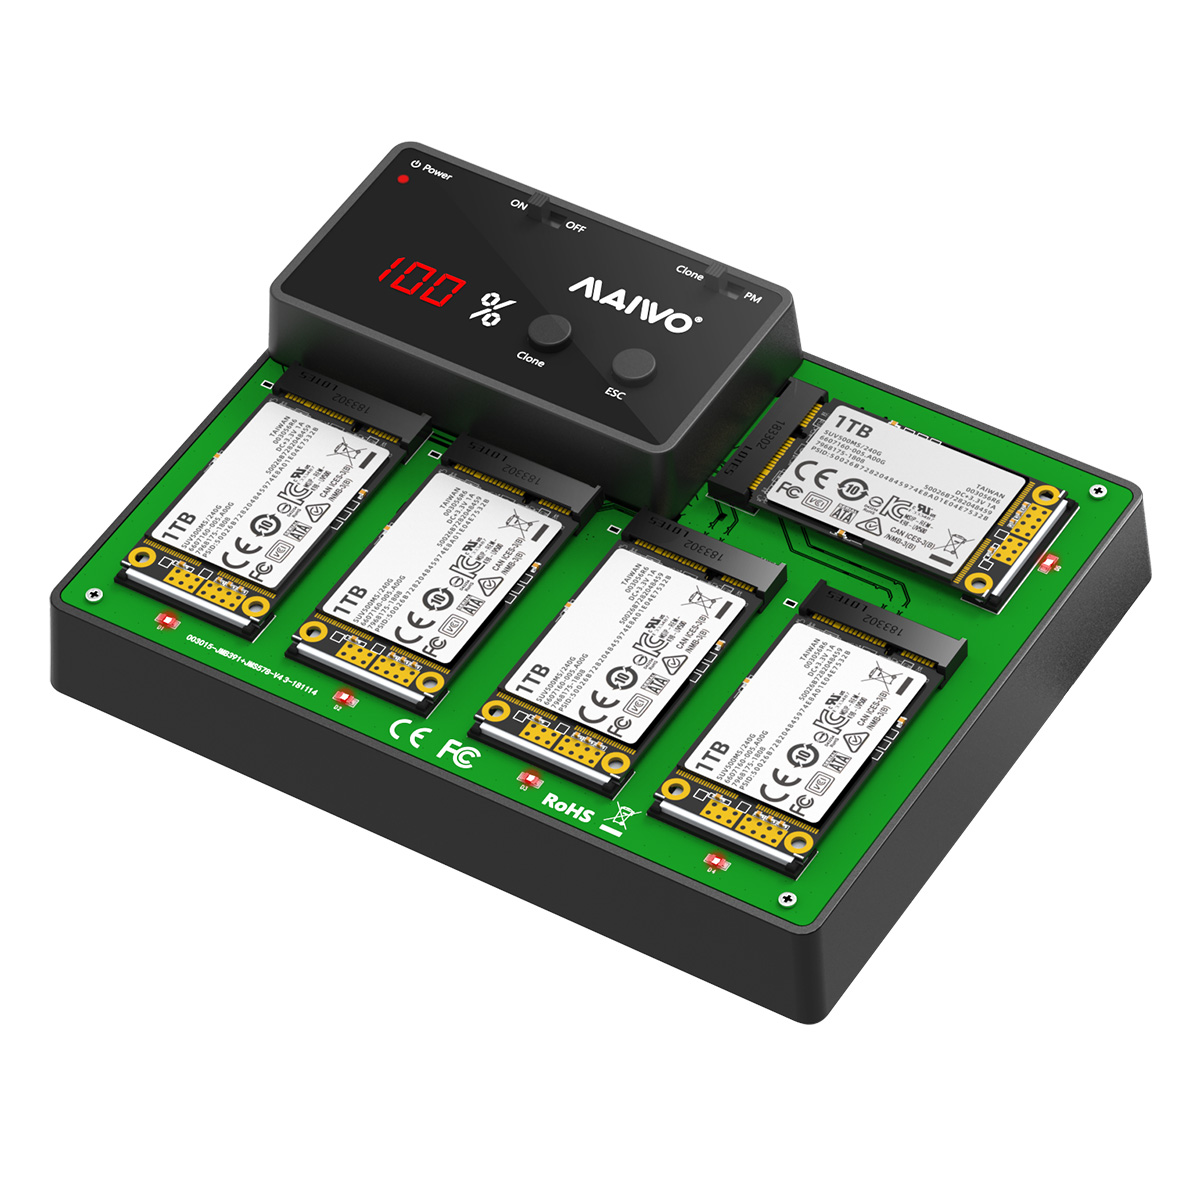 MAIWO K3015mSATA 5 Bay mSATA SSD Duplicator 4.8GB/Min Clone Speed USB3.0 mSATA SSD Docking Station D